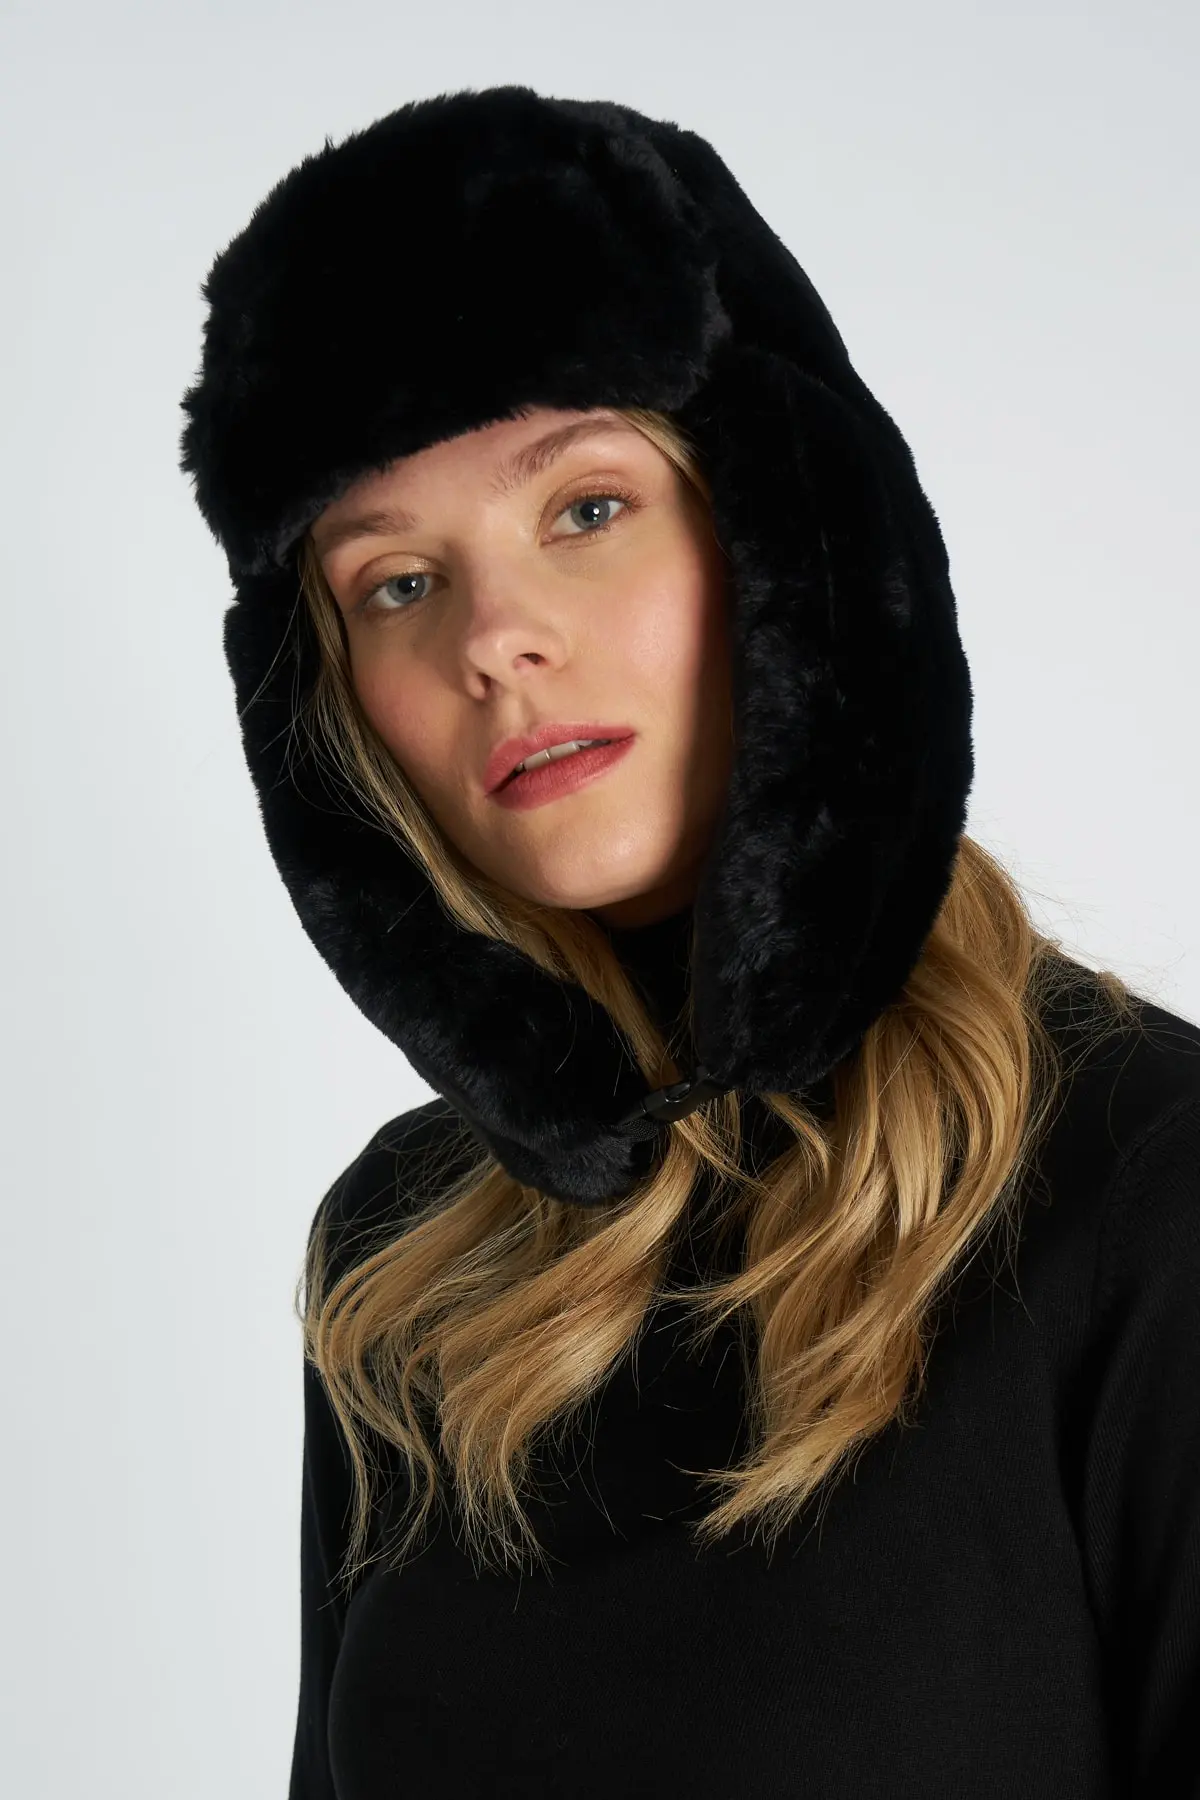 کلاه روسی مدل گوش دار زنانه مشکی برند Y-London